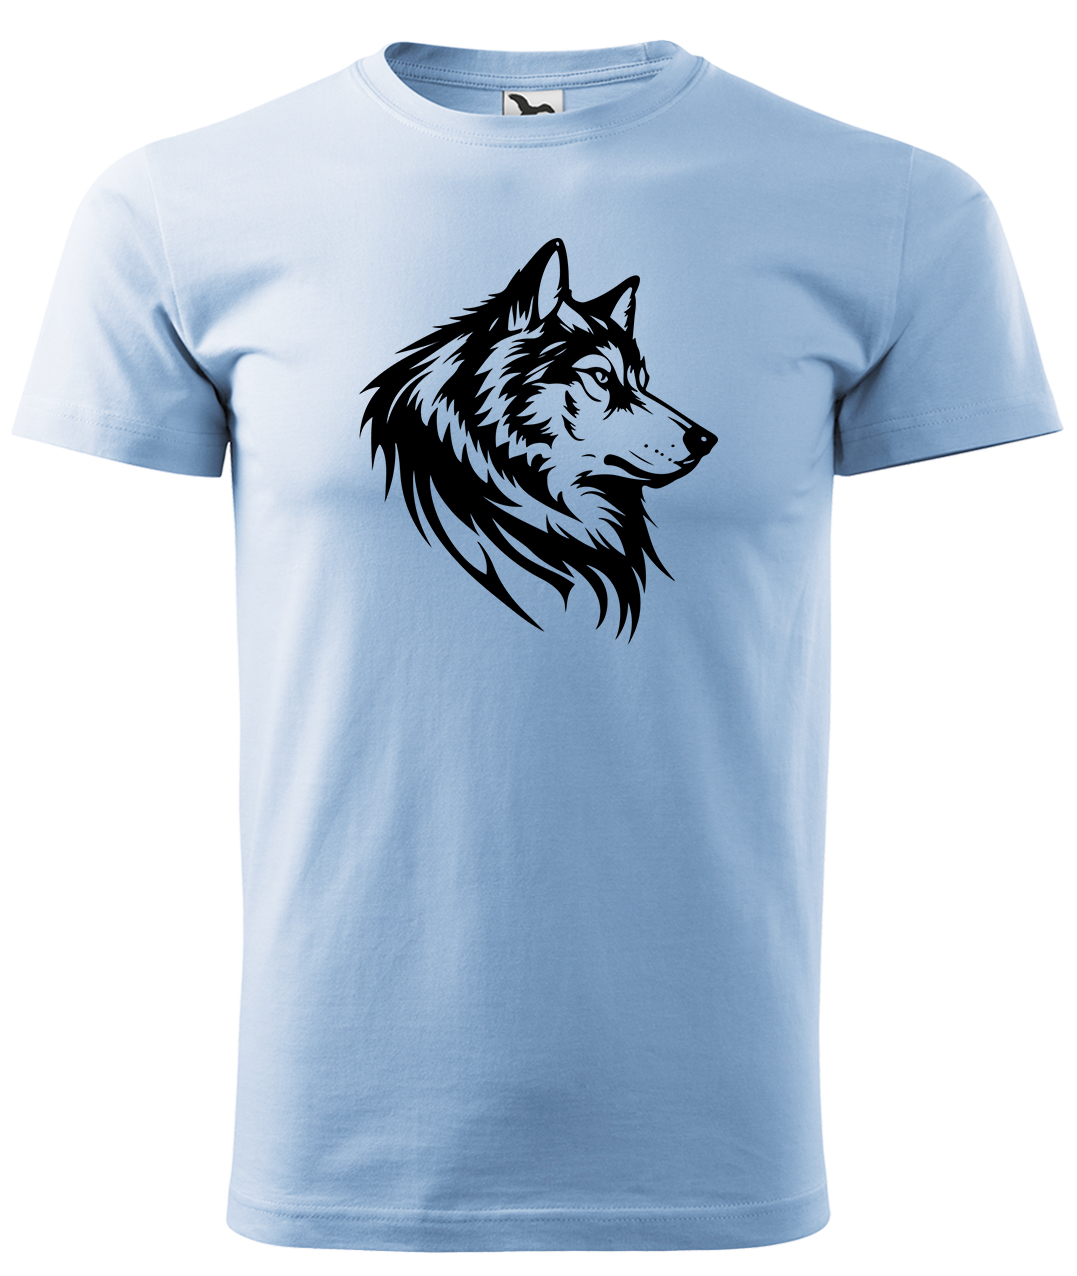 Dětské tričko s vlkem - Wolf Velikost: 4 roky / 110 cm, Barva: Nebesky modrá (15), Délka rukávu: Krátký rukáv